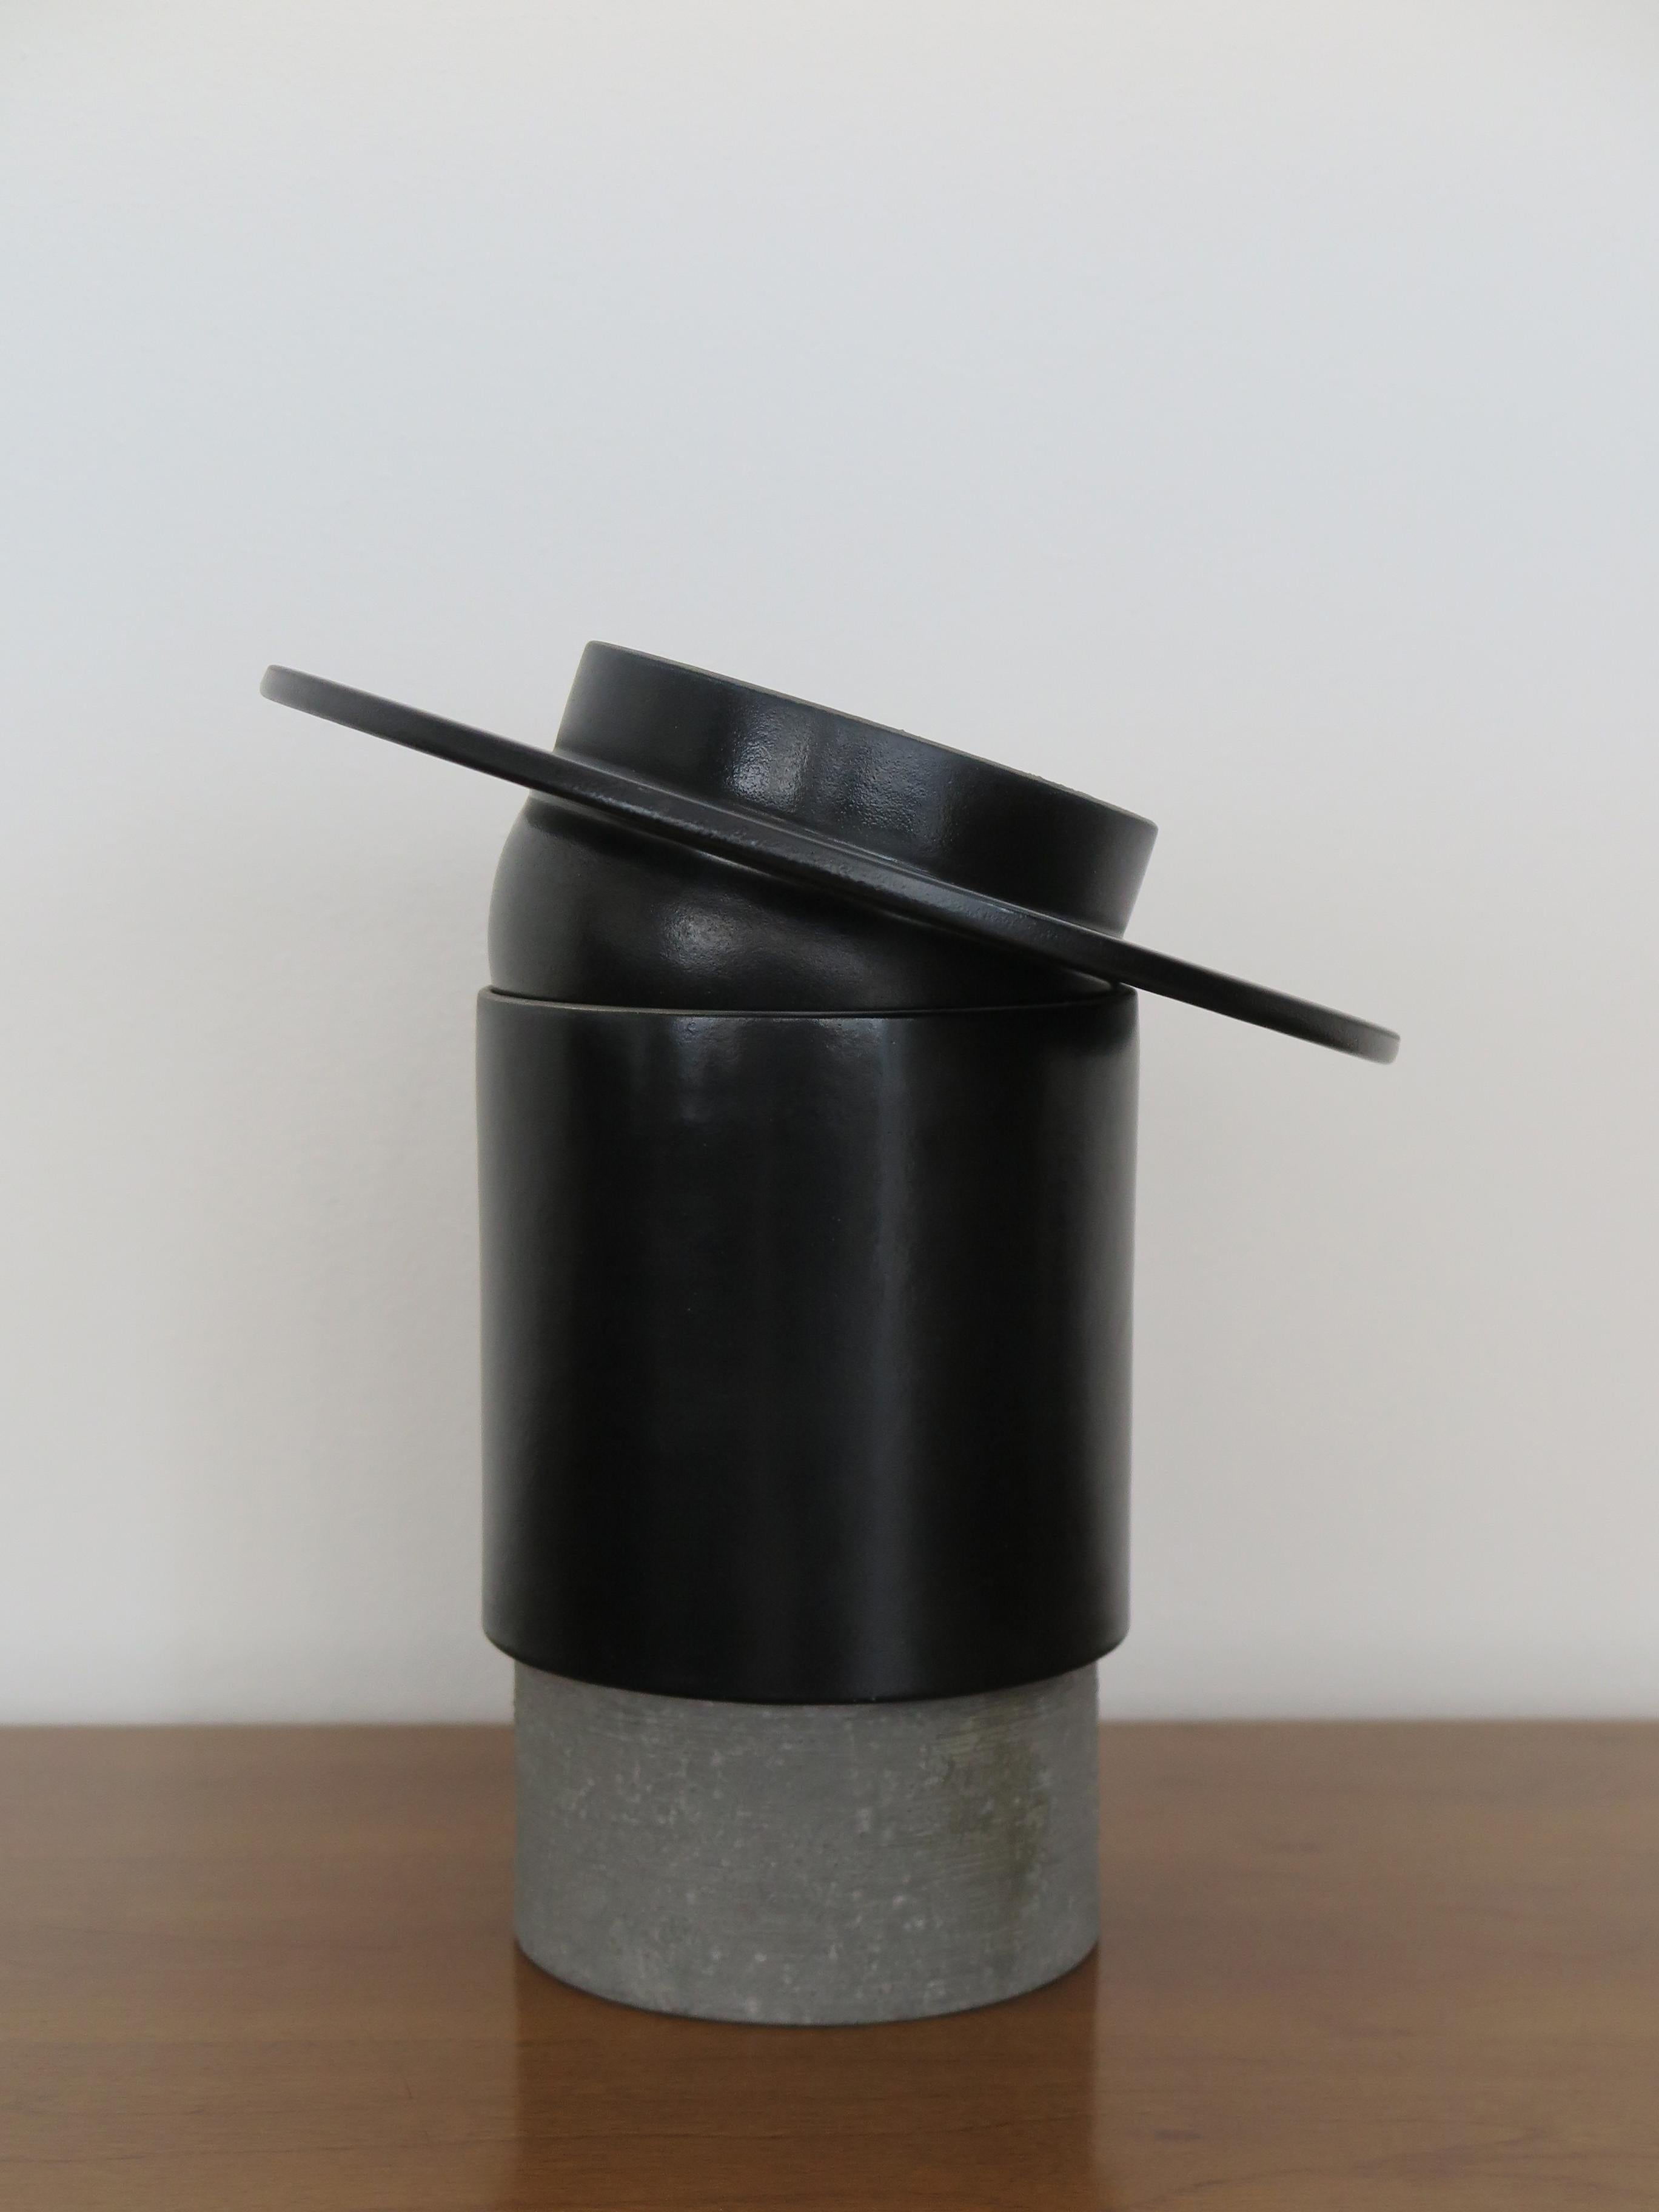 Modern Mario Ferrarini for Bitossi Italian Ceramic Vase Sculpture Centerpiece 2010s For Sale